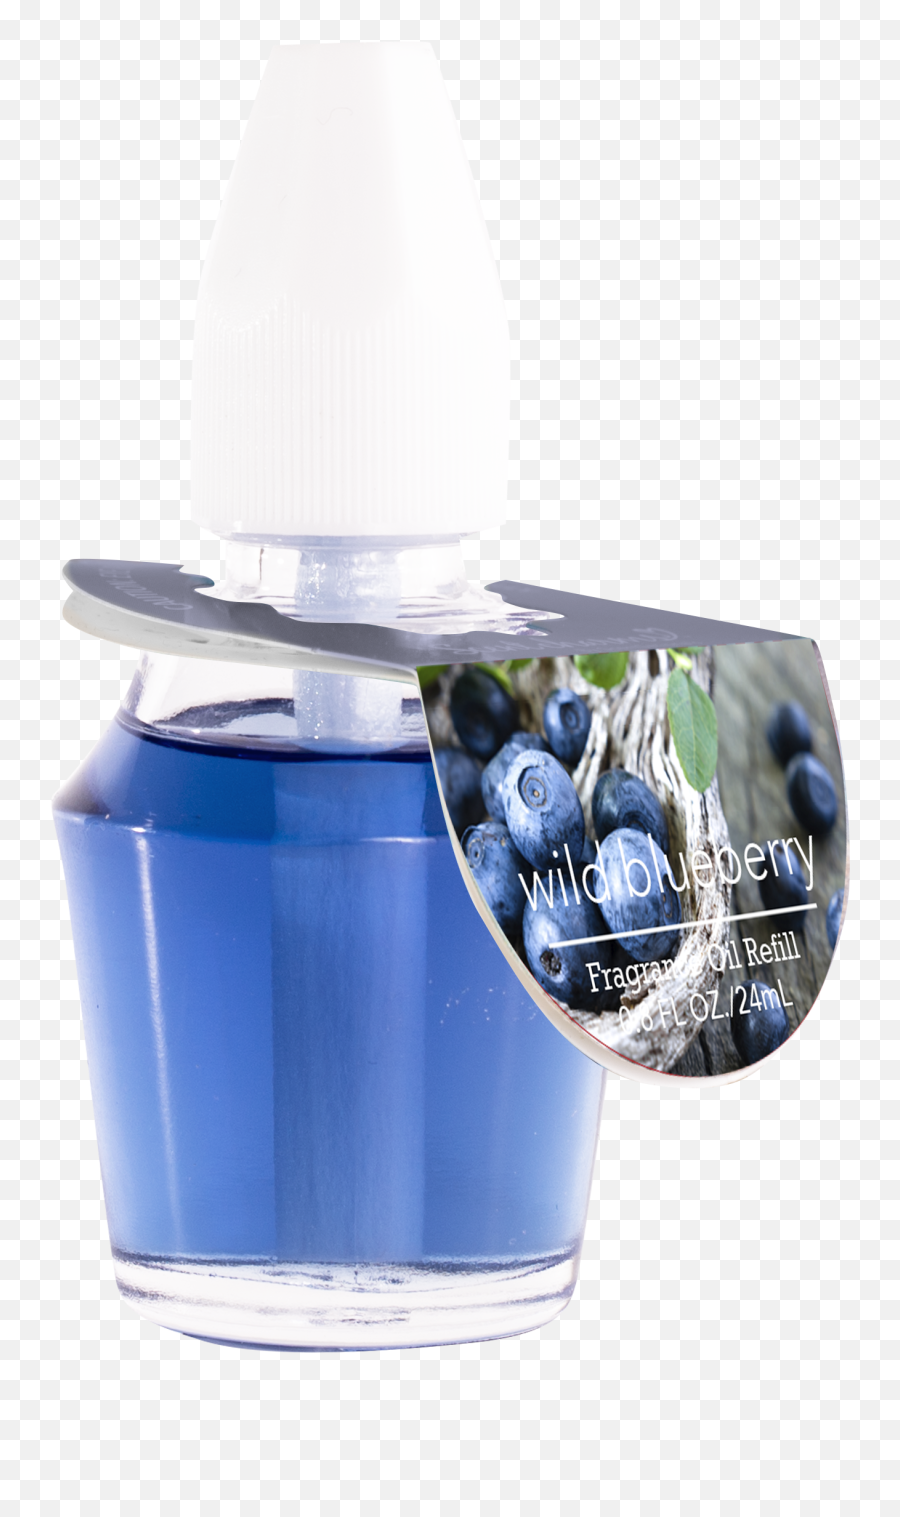 Wild Blueberry Fragrance Oil U2014 Scentsationals Emoji,Blueberry Png